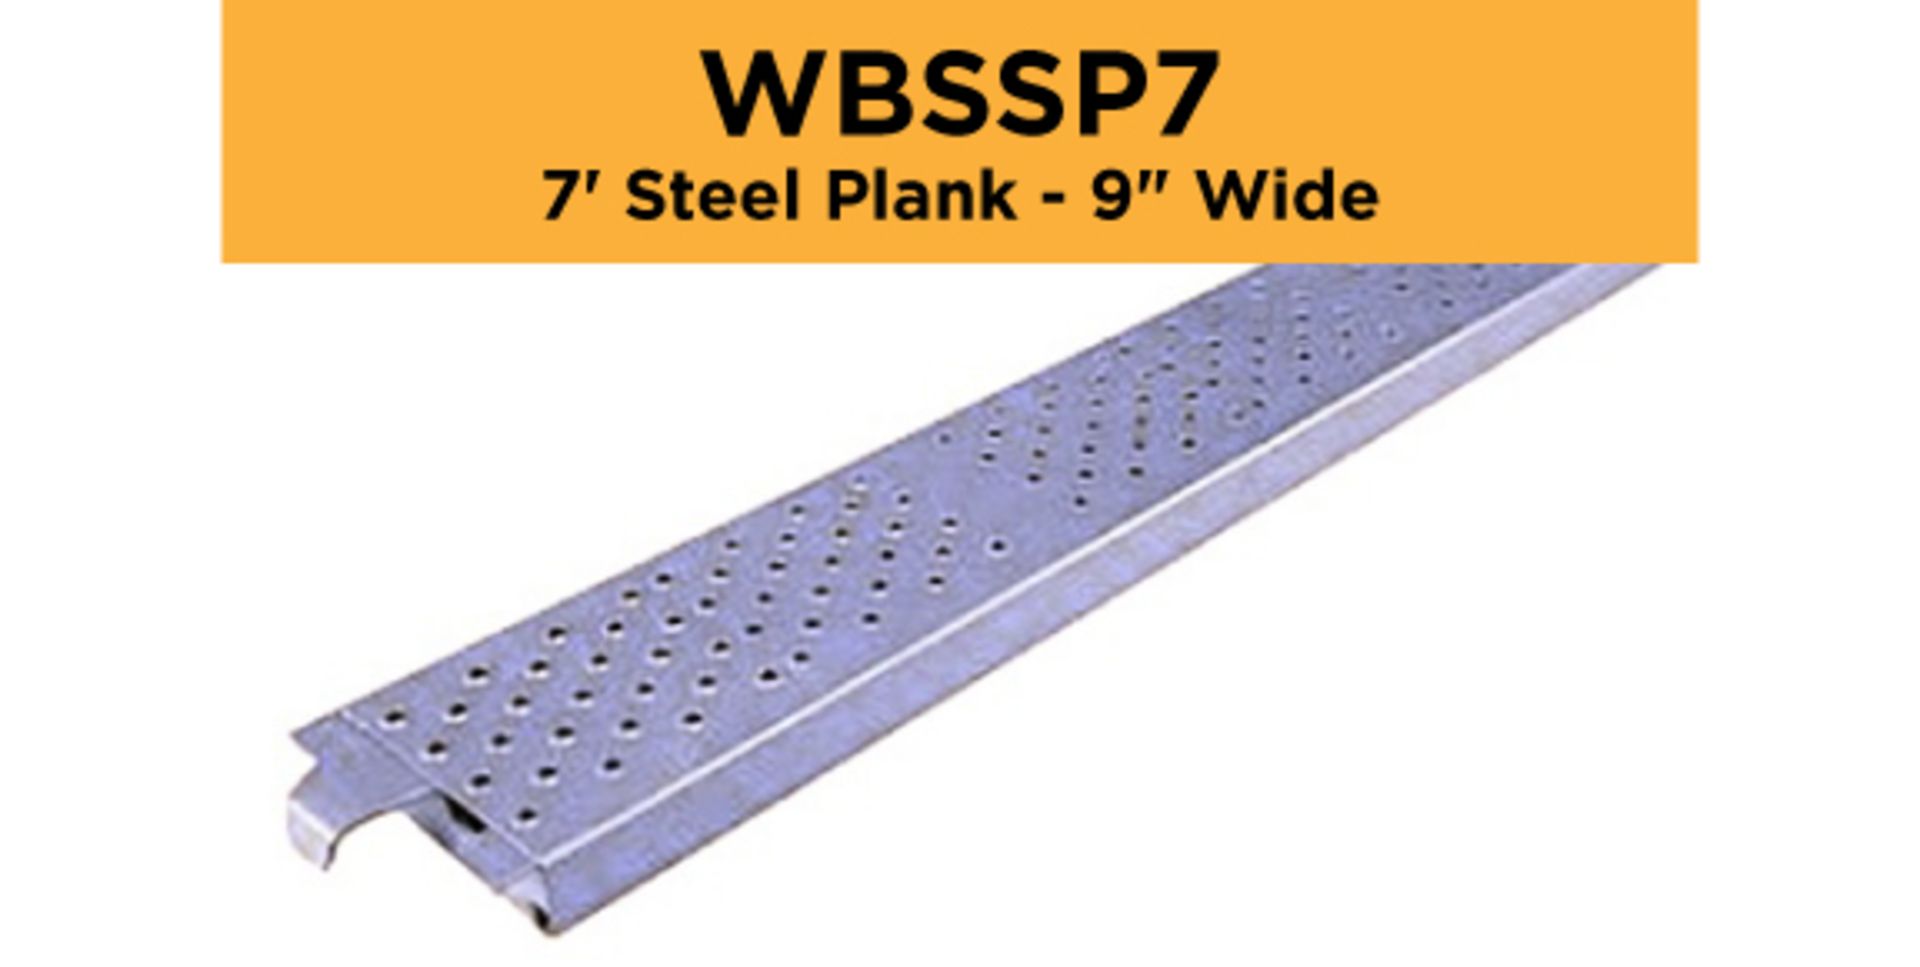 Lot of (256) 7' Steel Plank - 9" Wide - Bay Length 84" (2.13M); Type: WBSSP7 - (4) Racks Per Lot -